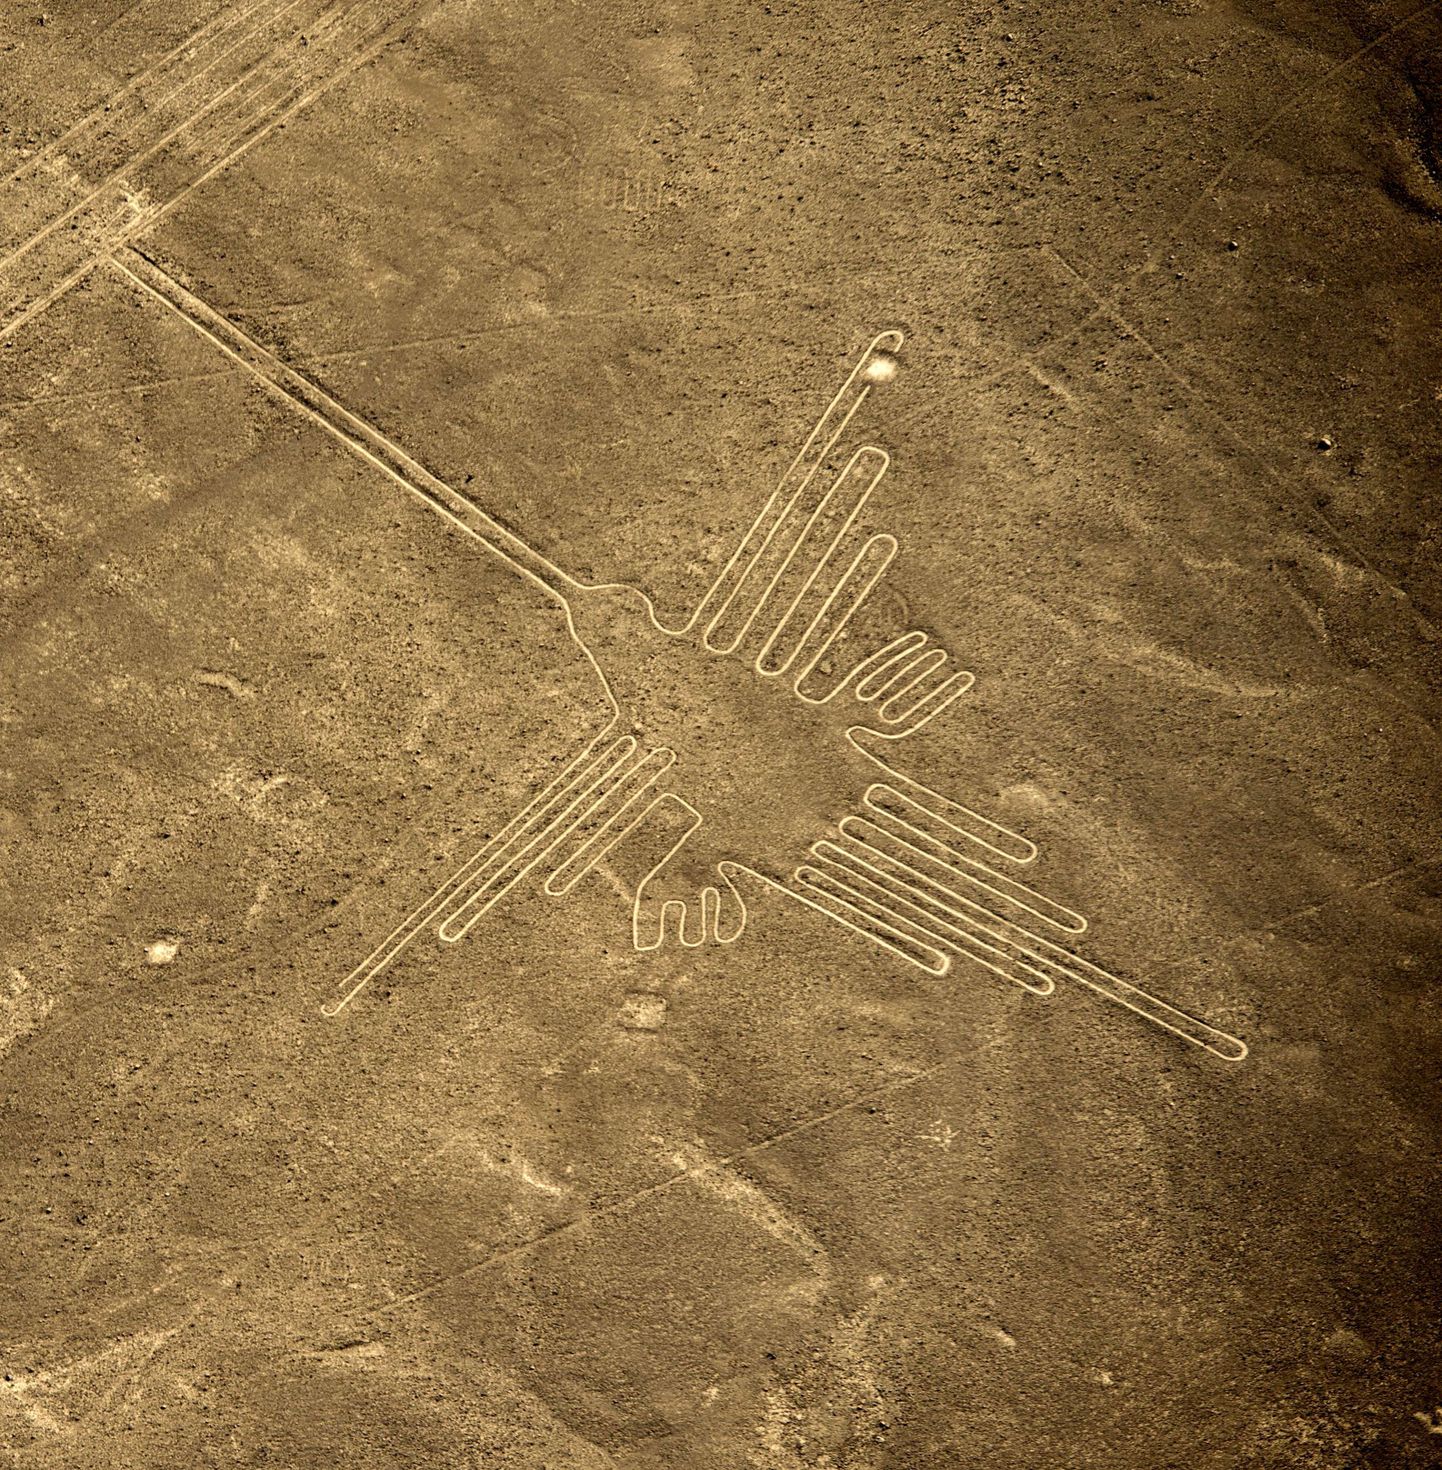 Peruu Nazca geoglüüf, mis kujutab koolibrid